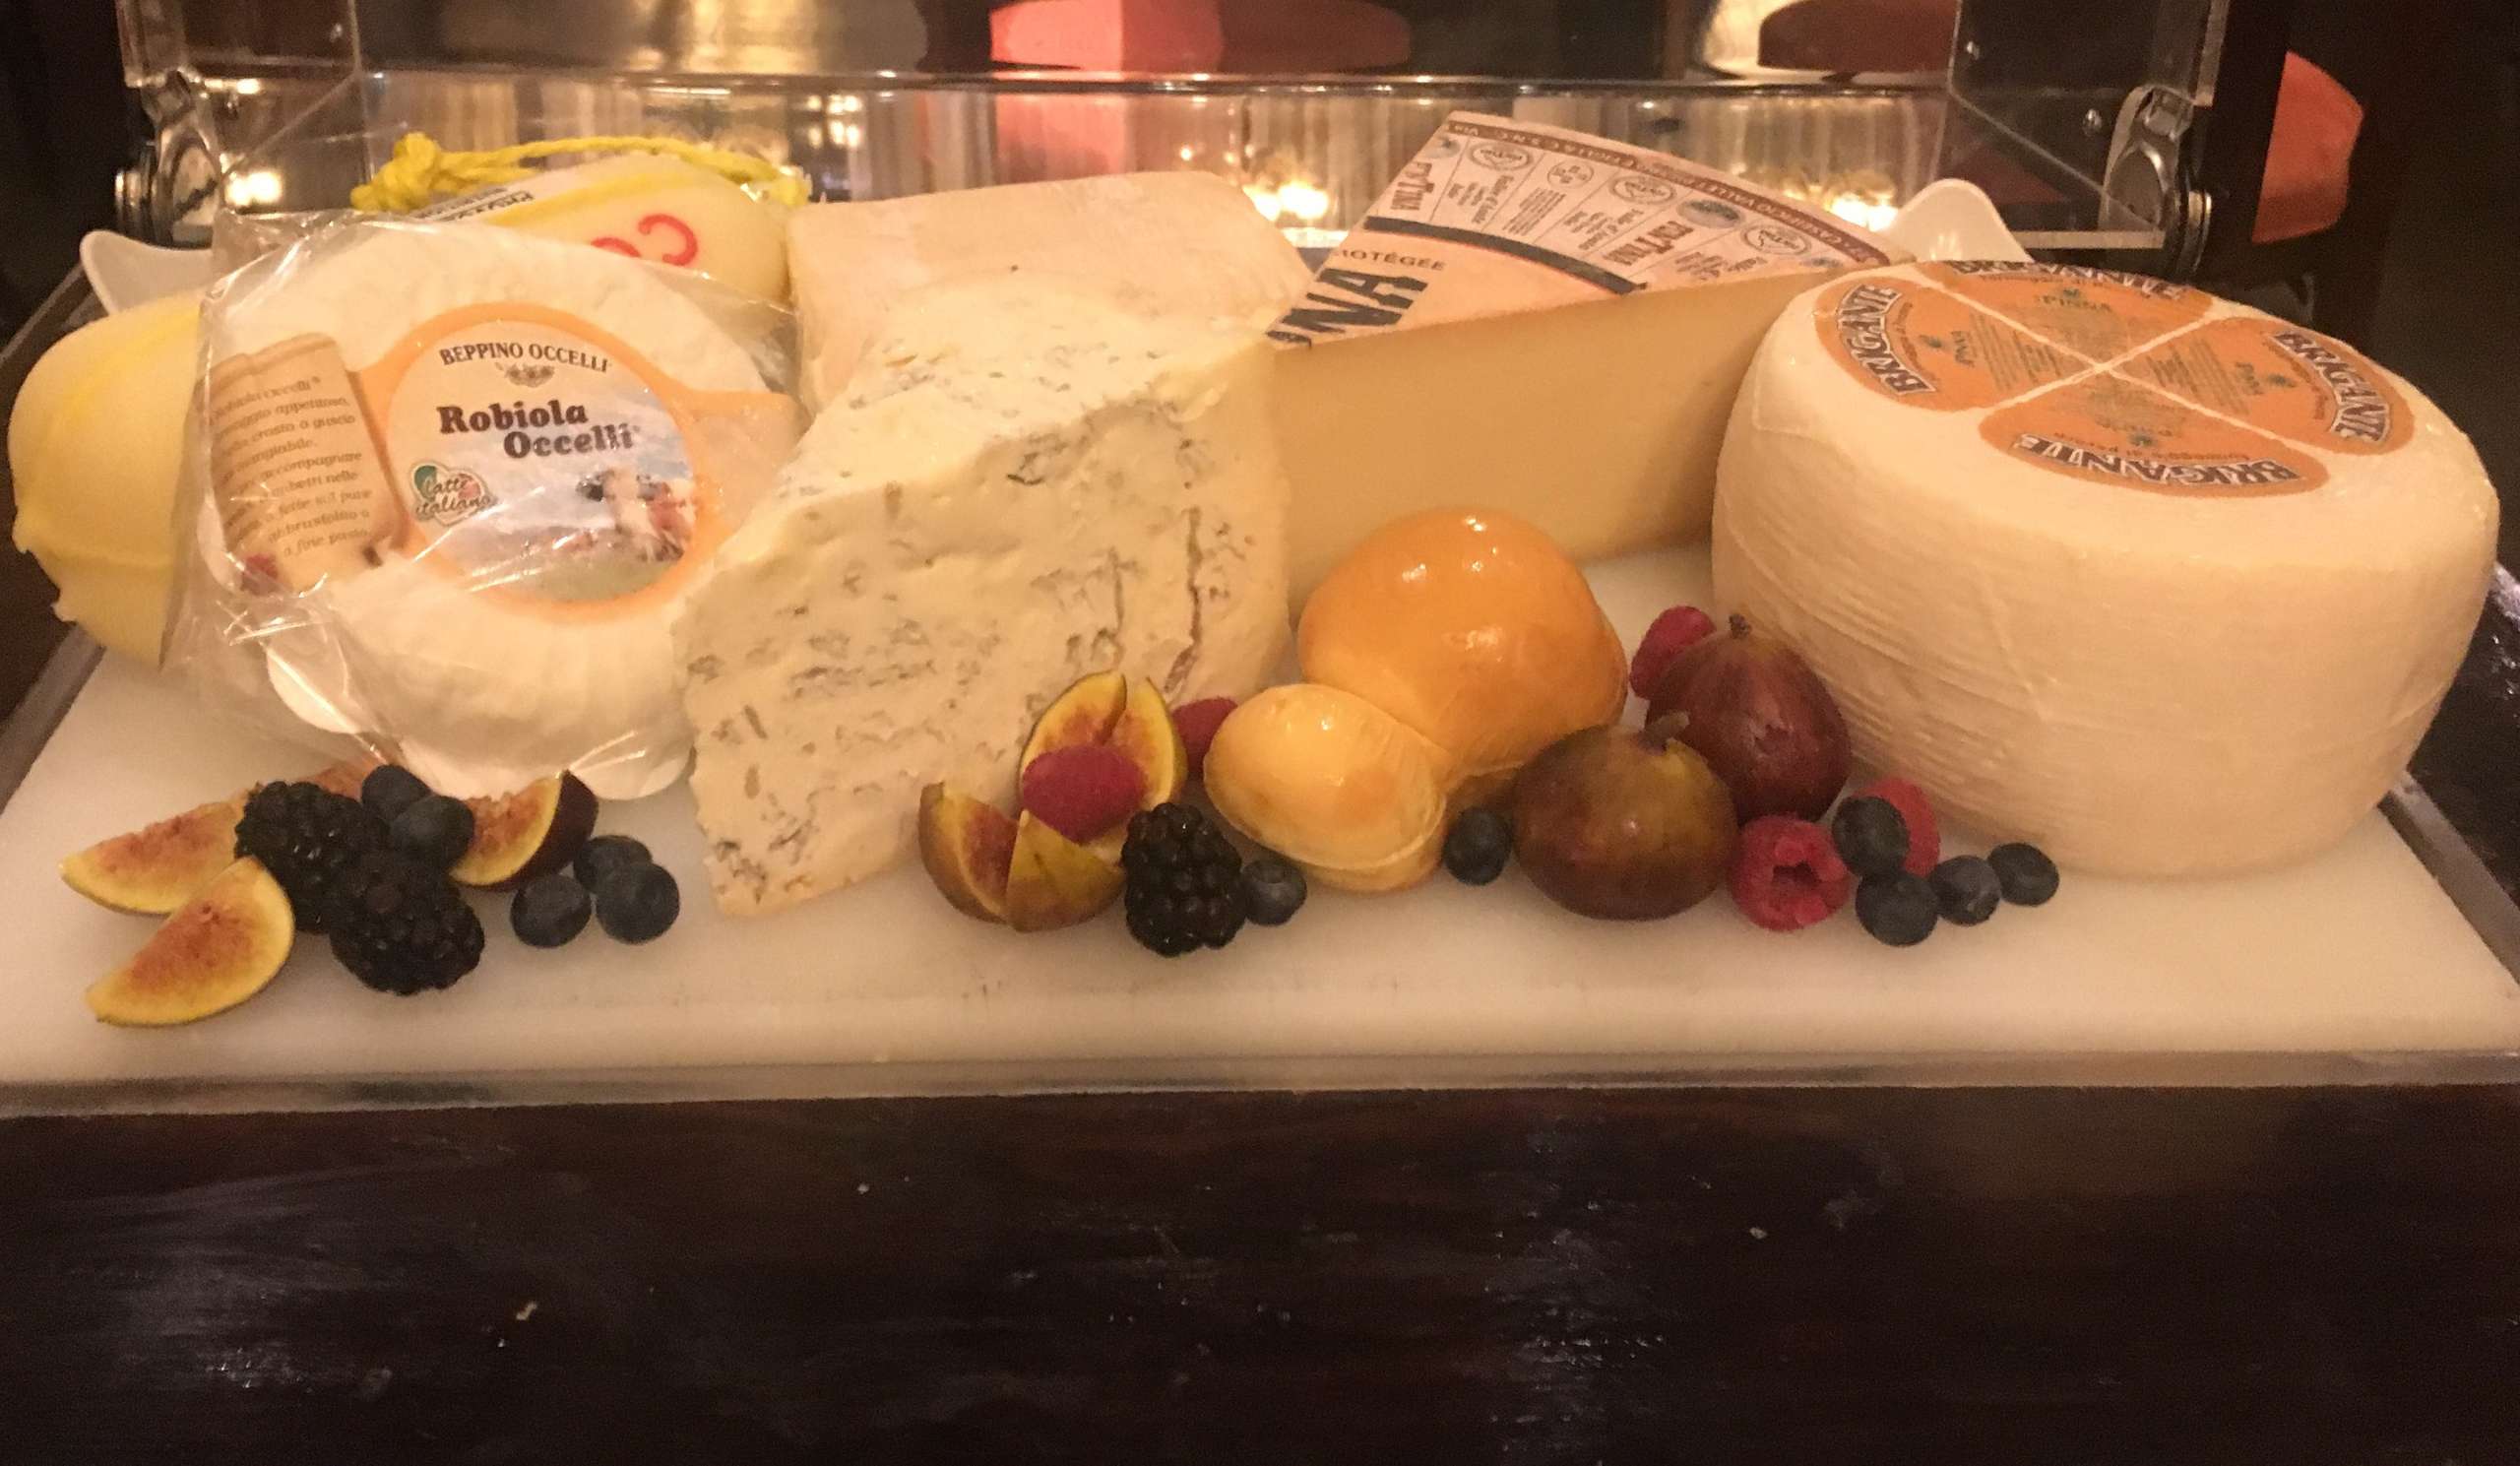 Bene’s Italian cheese board at Sheraton Macau